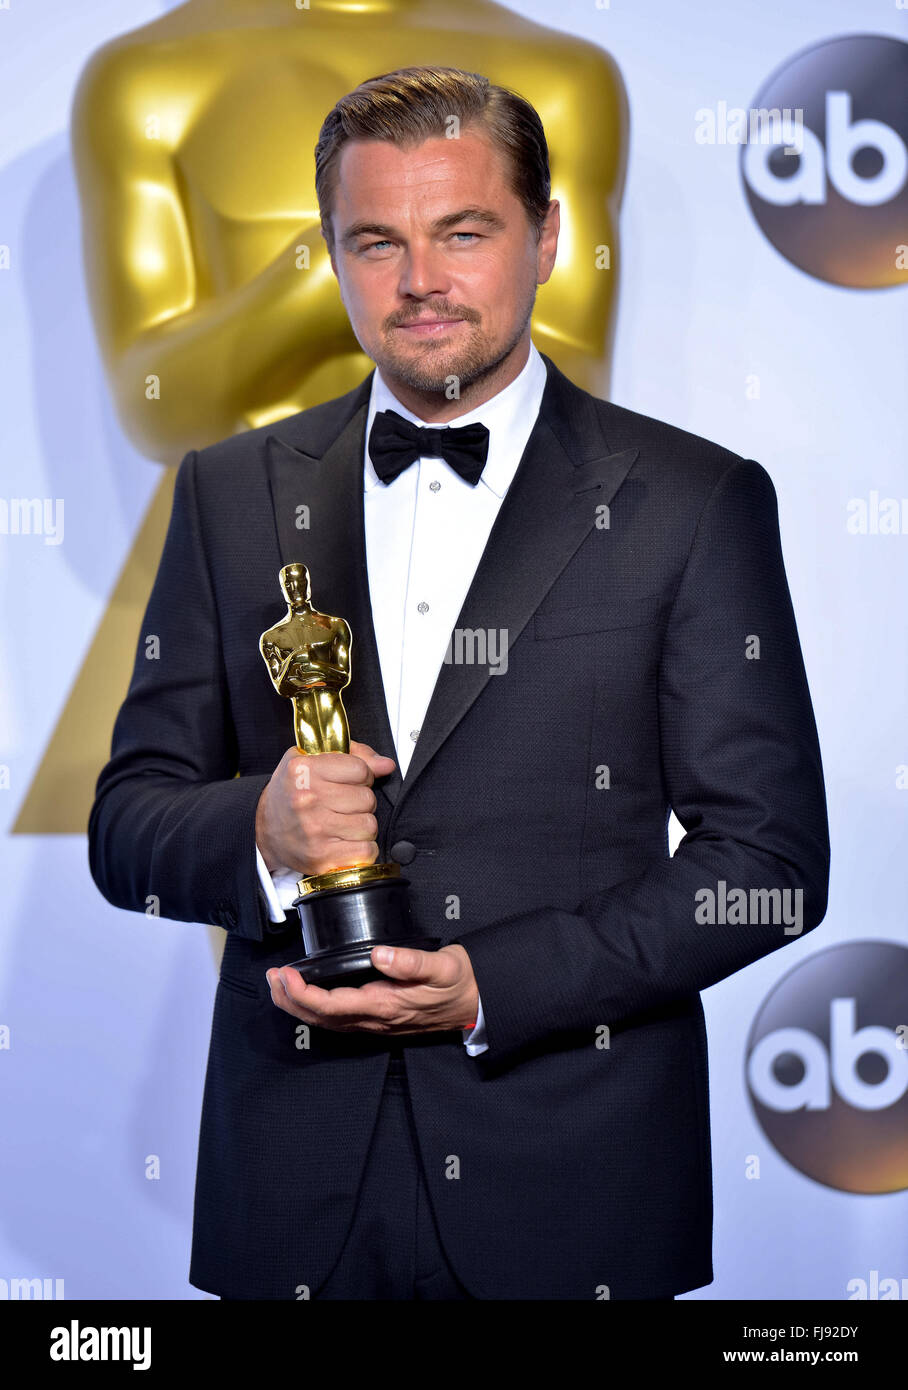 Leonardo DiCaprio hält den Oscar für Schauspieler in einer Hauptrolle für "The Revenant" im Presseraum während der 88. jährlichen Oscar-Verleihung im Dolby Theatre in Hollywood, Kalifornien, USA, 28. Februar 2016. Foto: Hubert Boesl/Dpa - NO-Draht-Dienst- Stockfoto